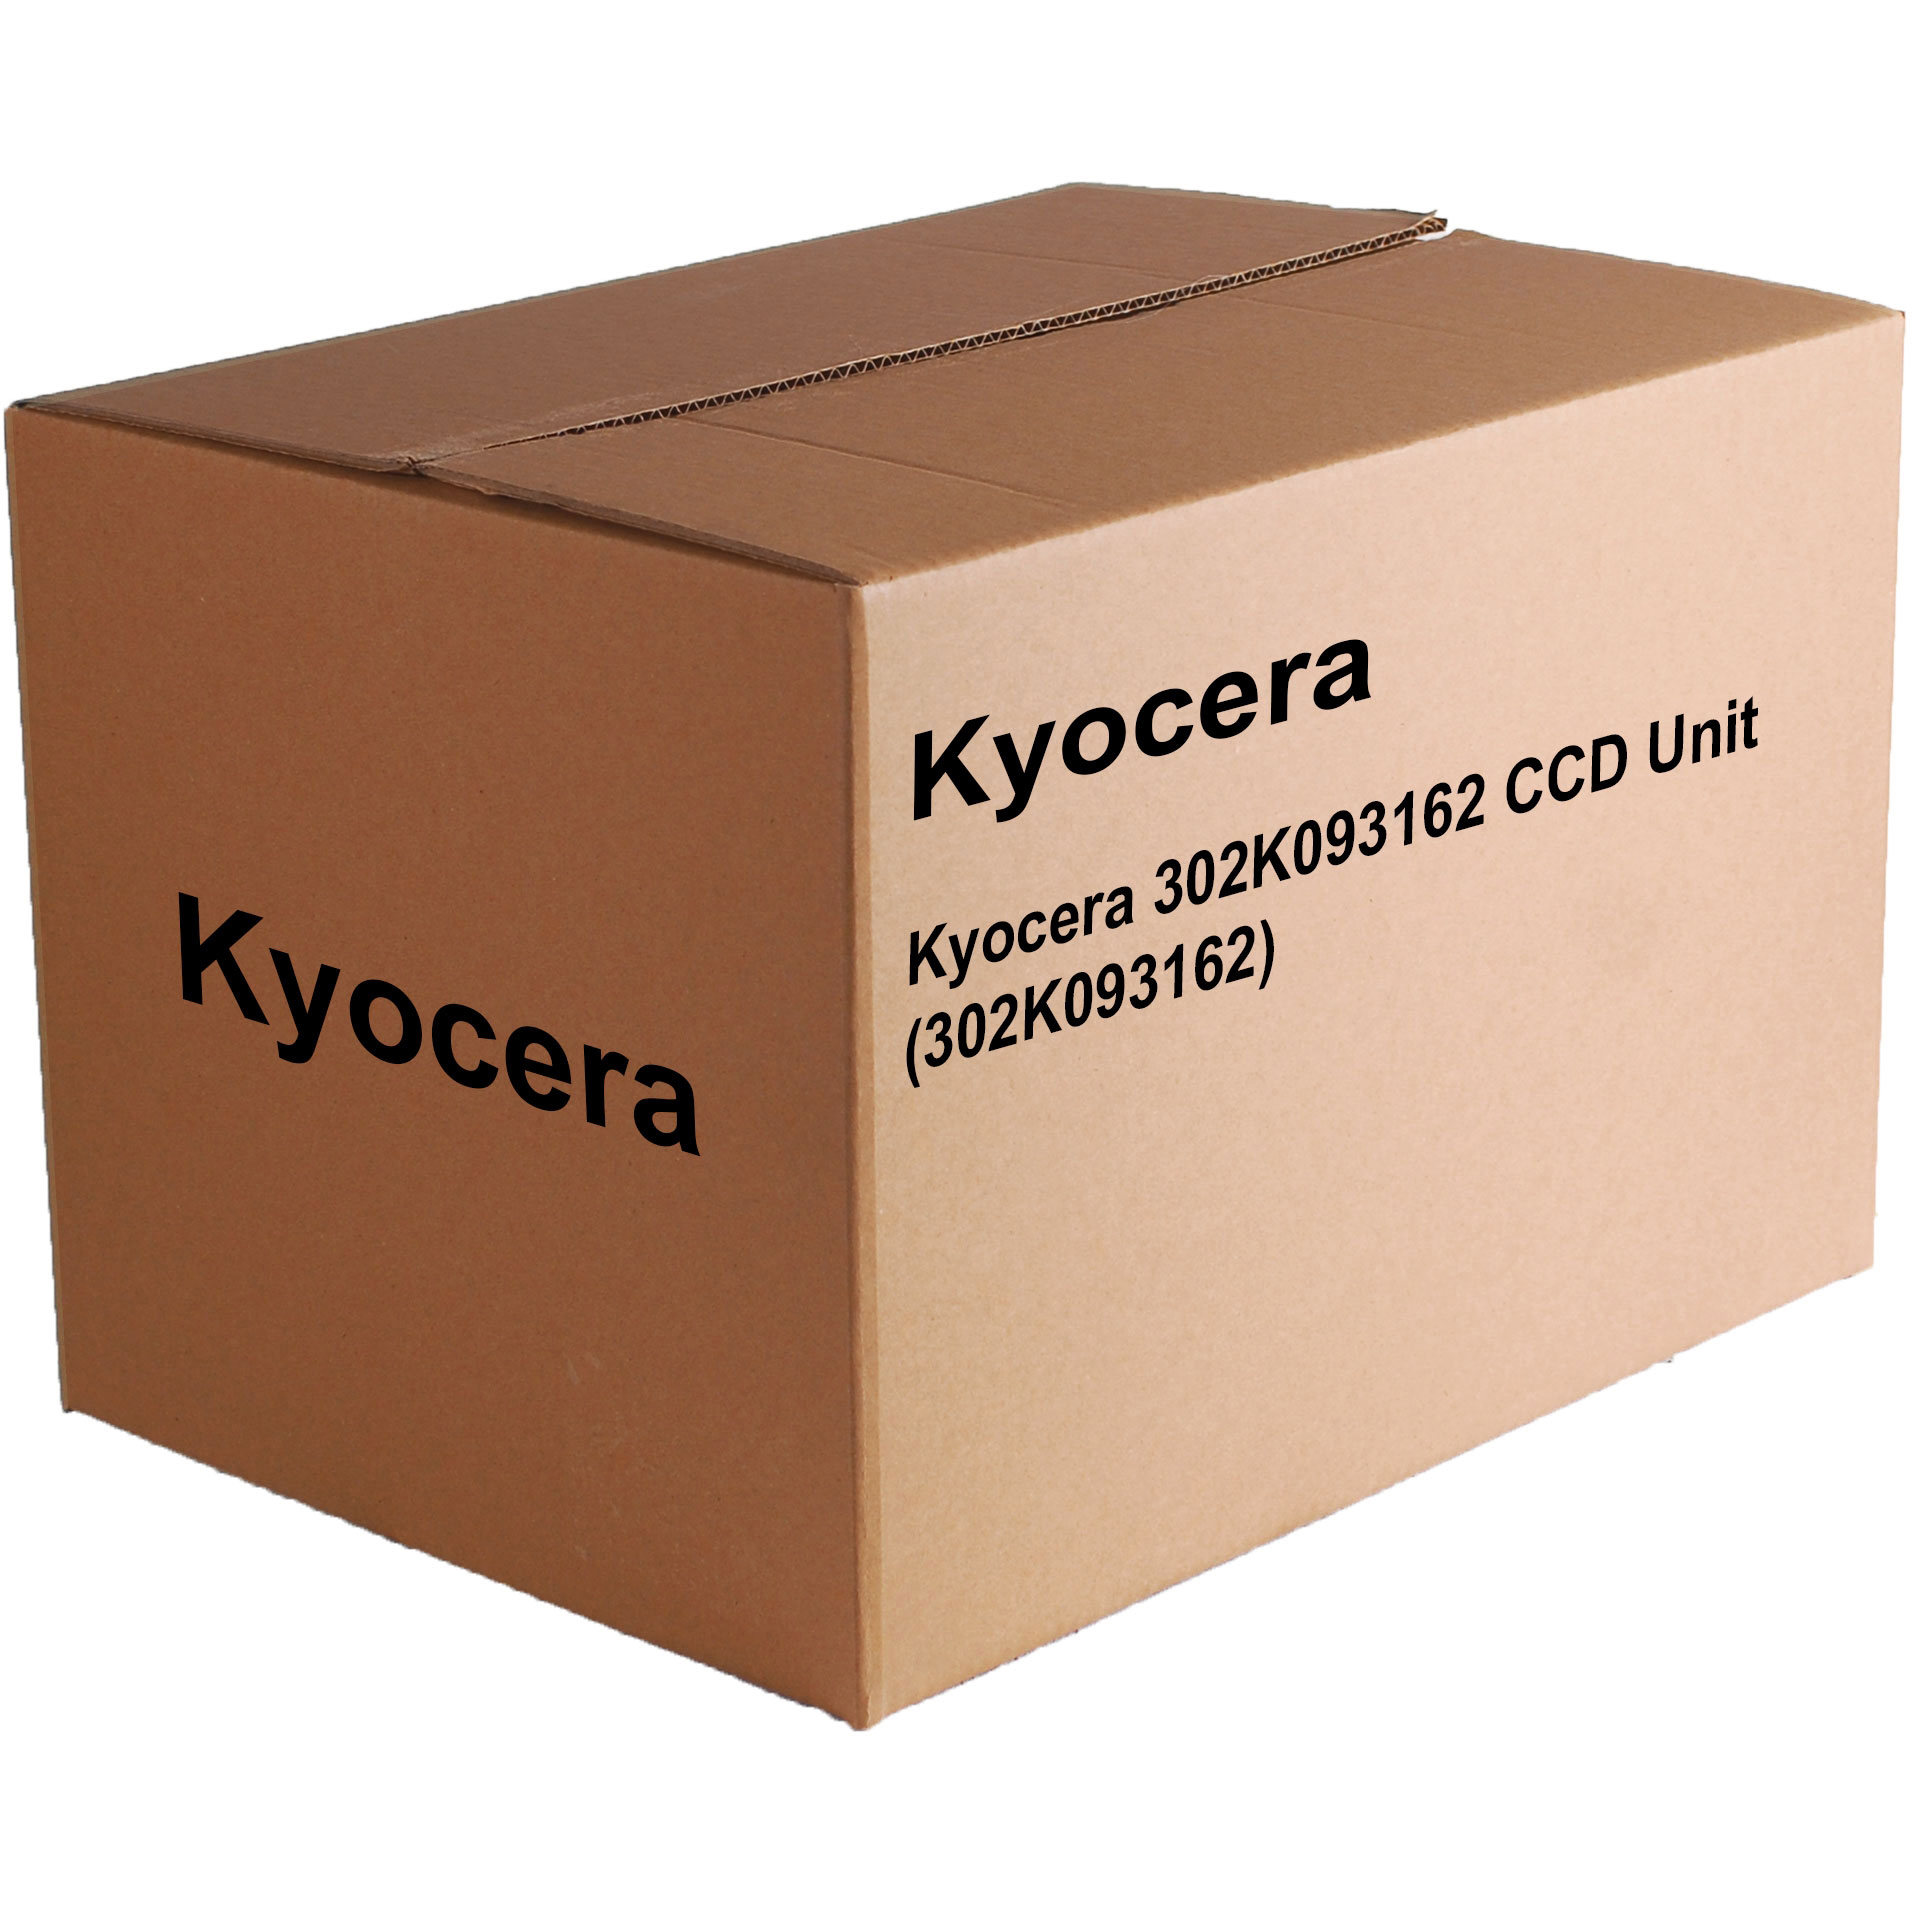 Original Kyocera 302K093162 CCD Unit (302K093162)